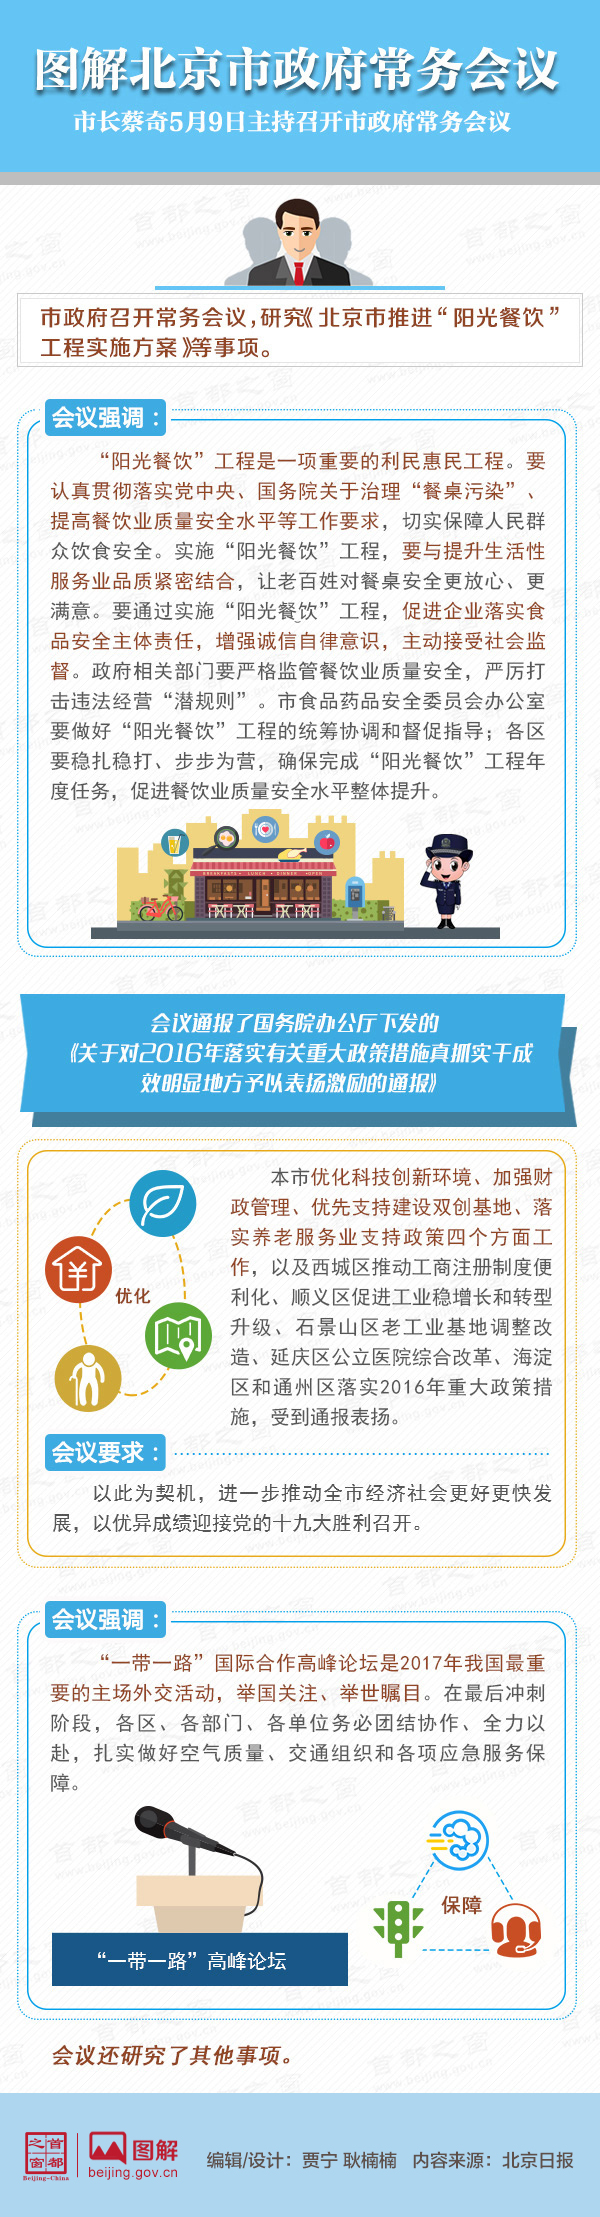 图解2017年5月9日北京市政府常务会议